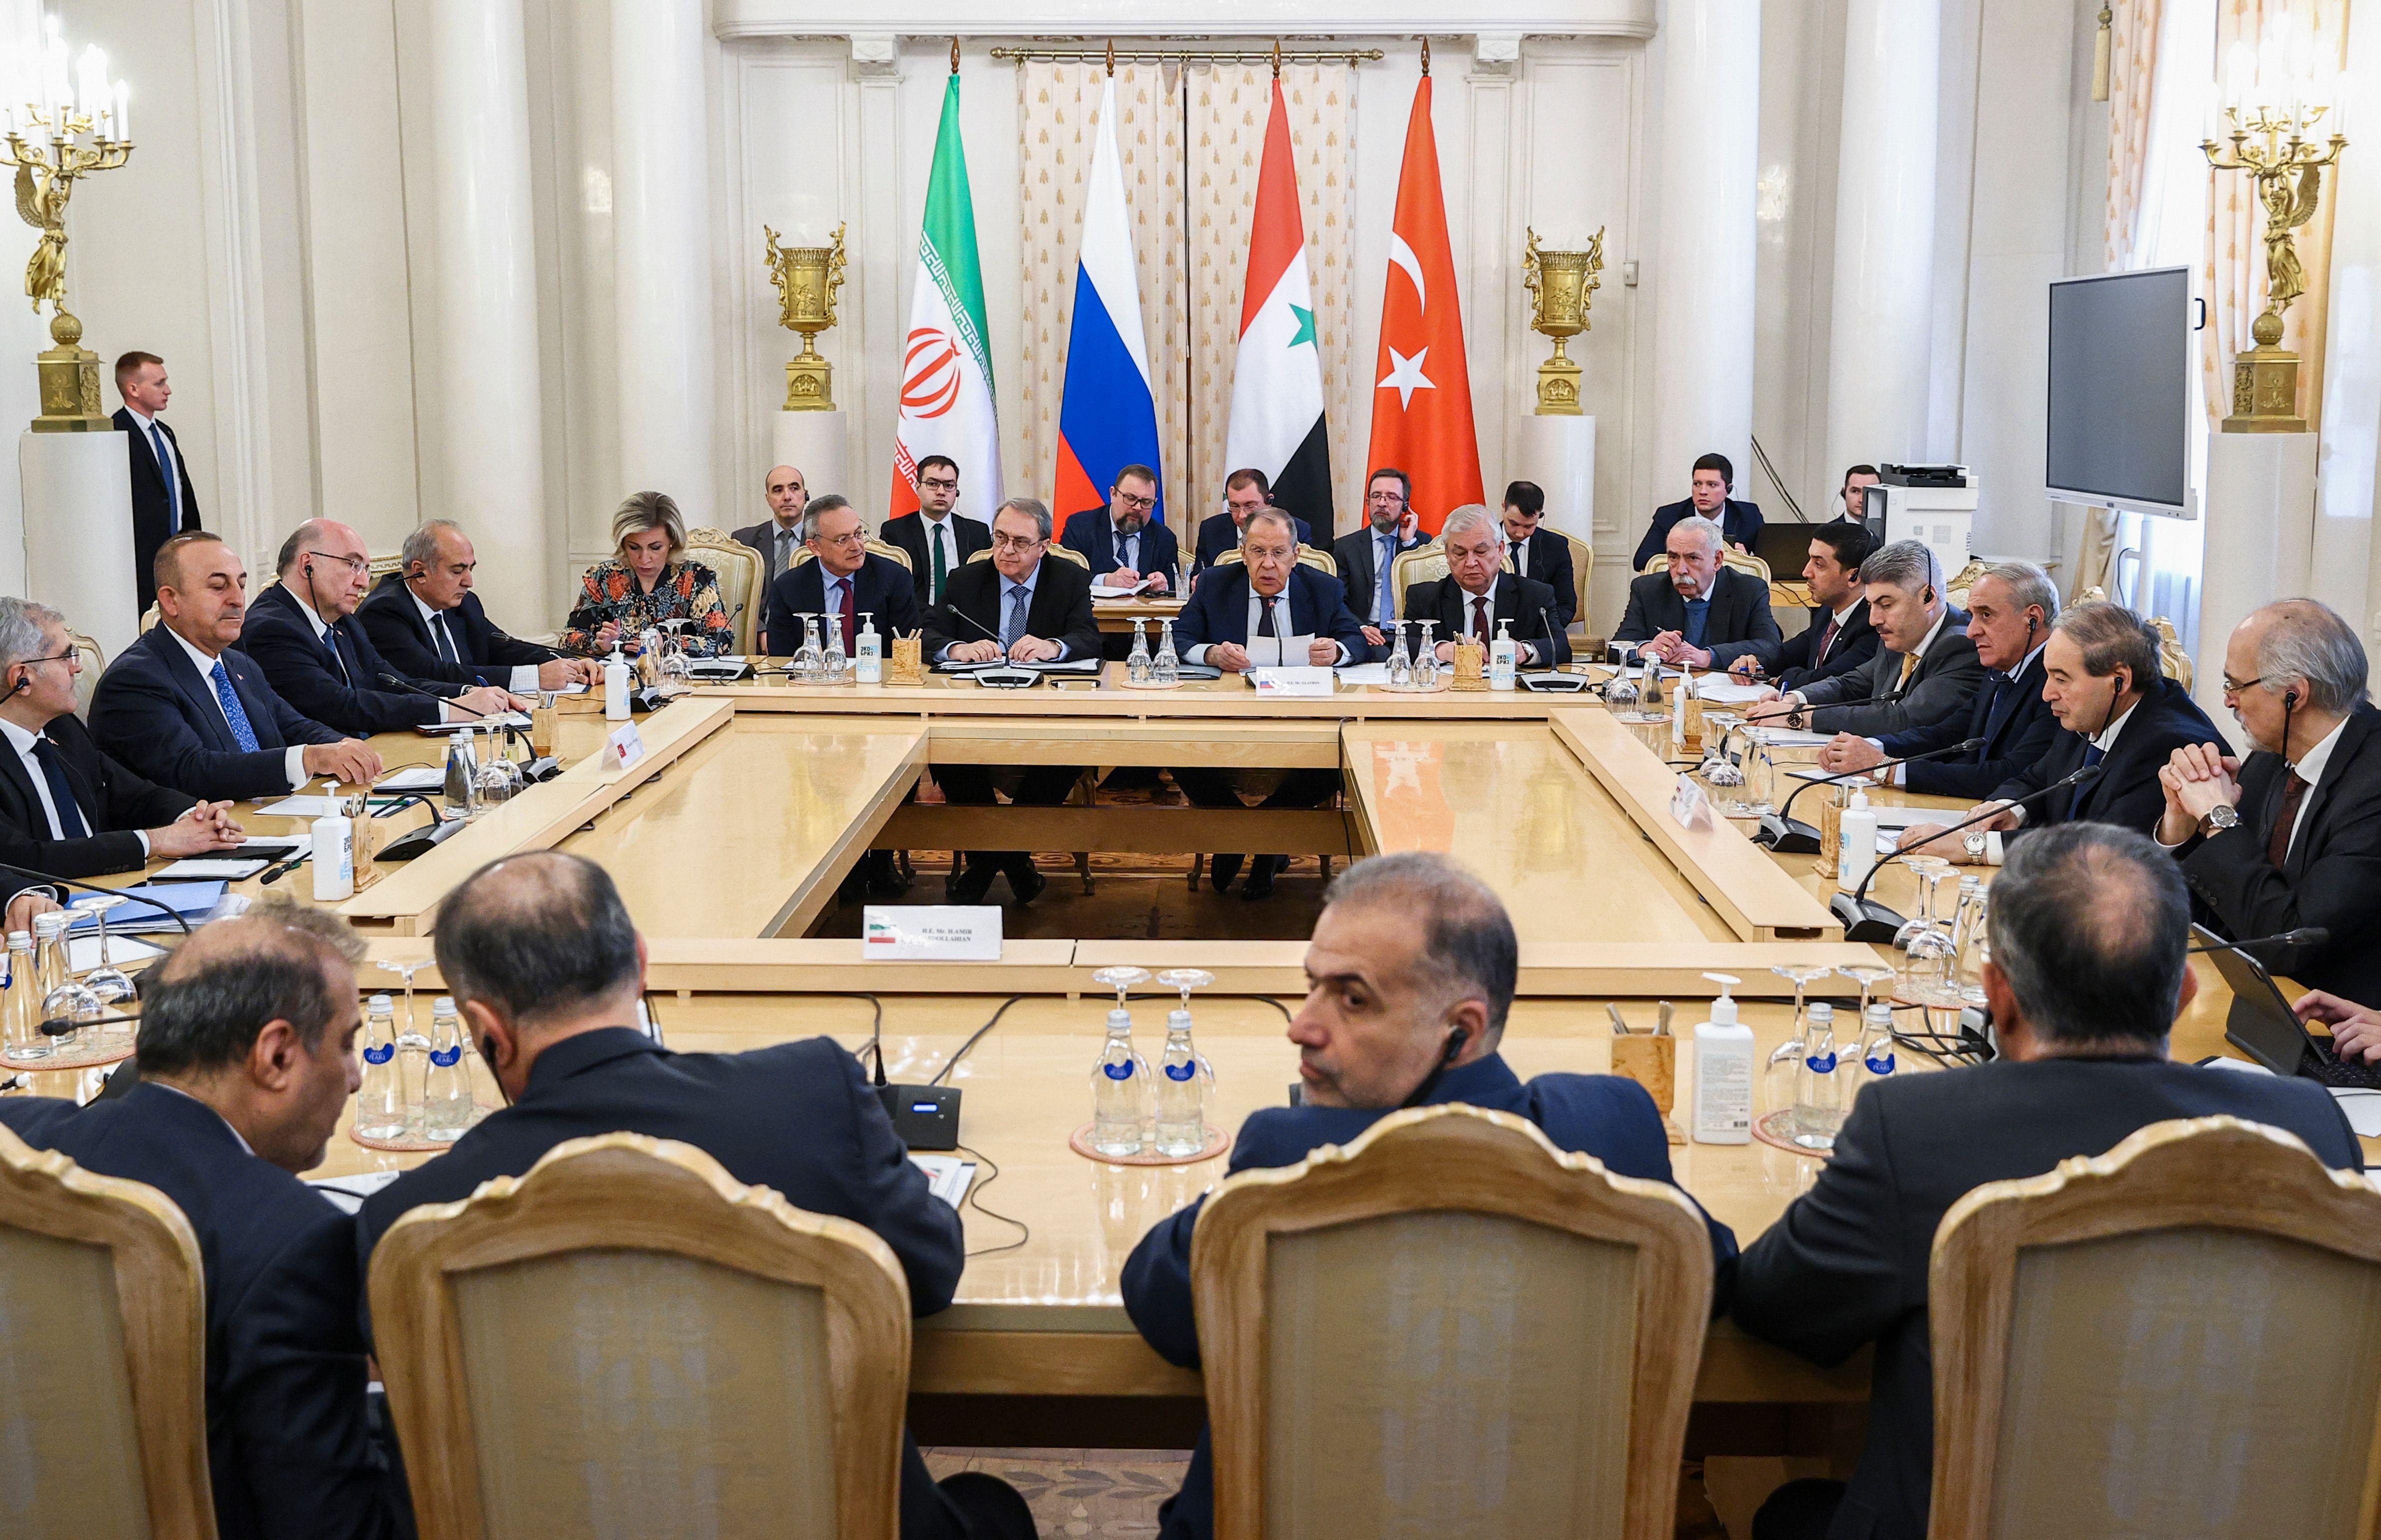 وزراء خارجية سوريا وتركيا وإيران وروسيا يجتمعون في موسكو لمناقشة محادثات السلام السورية.